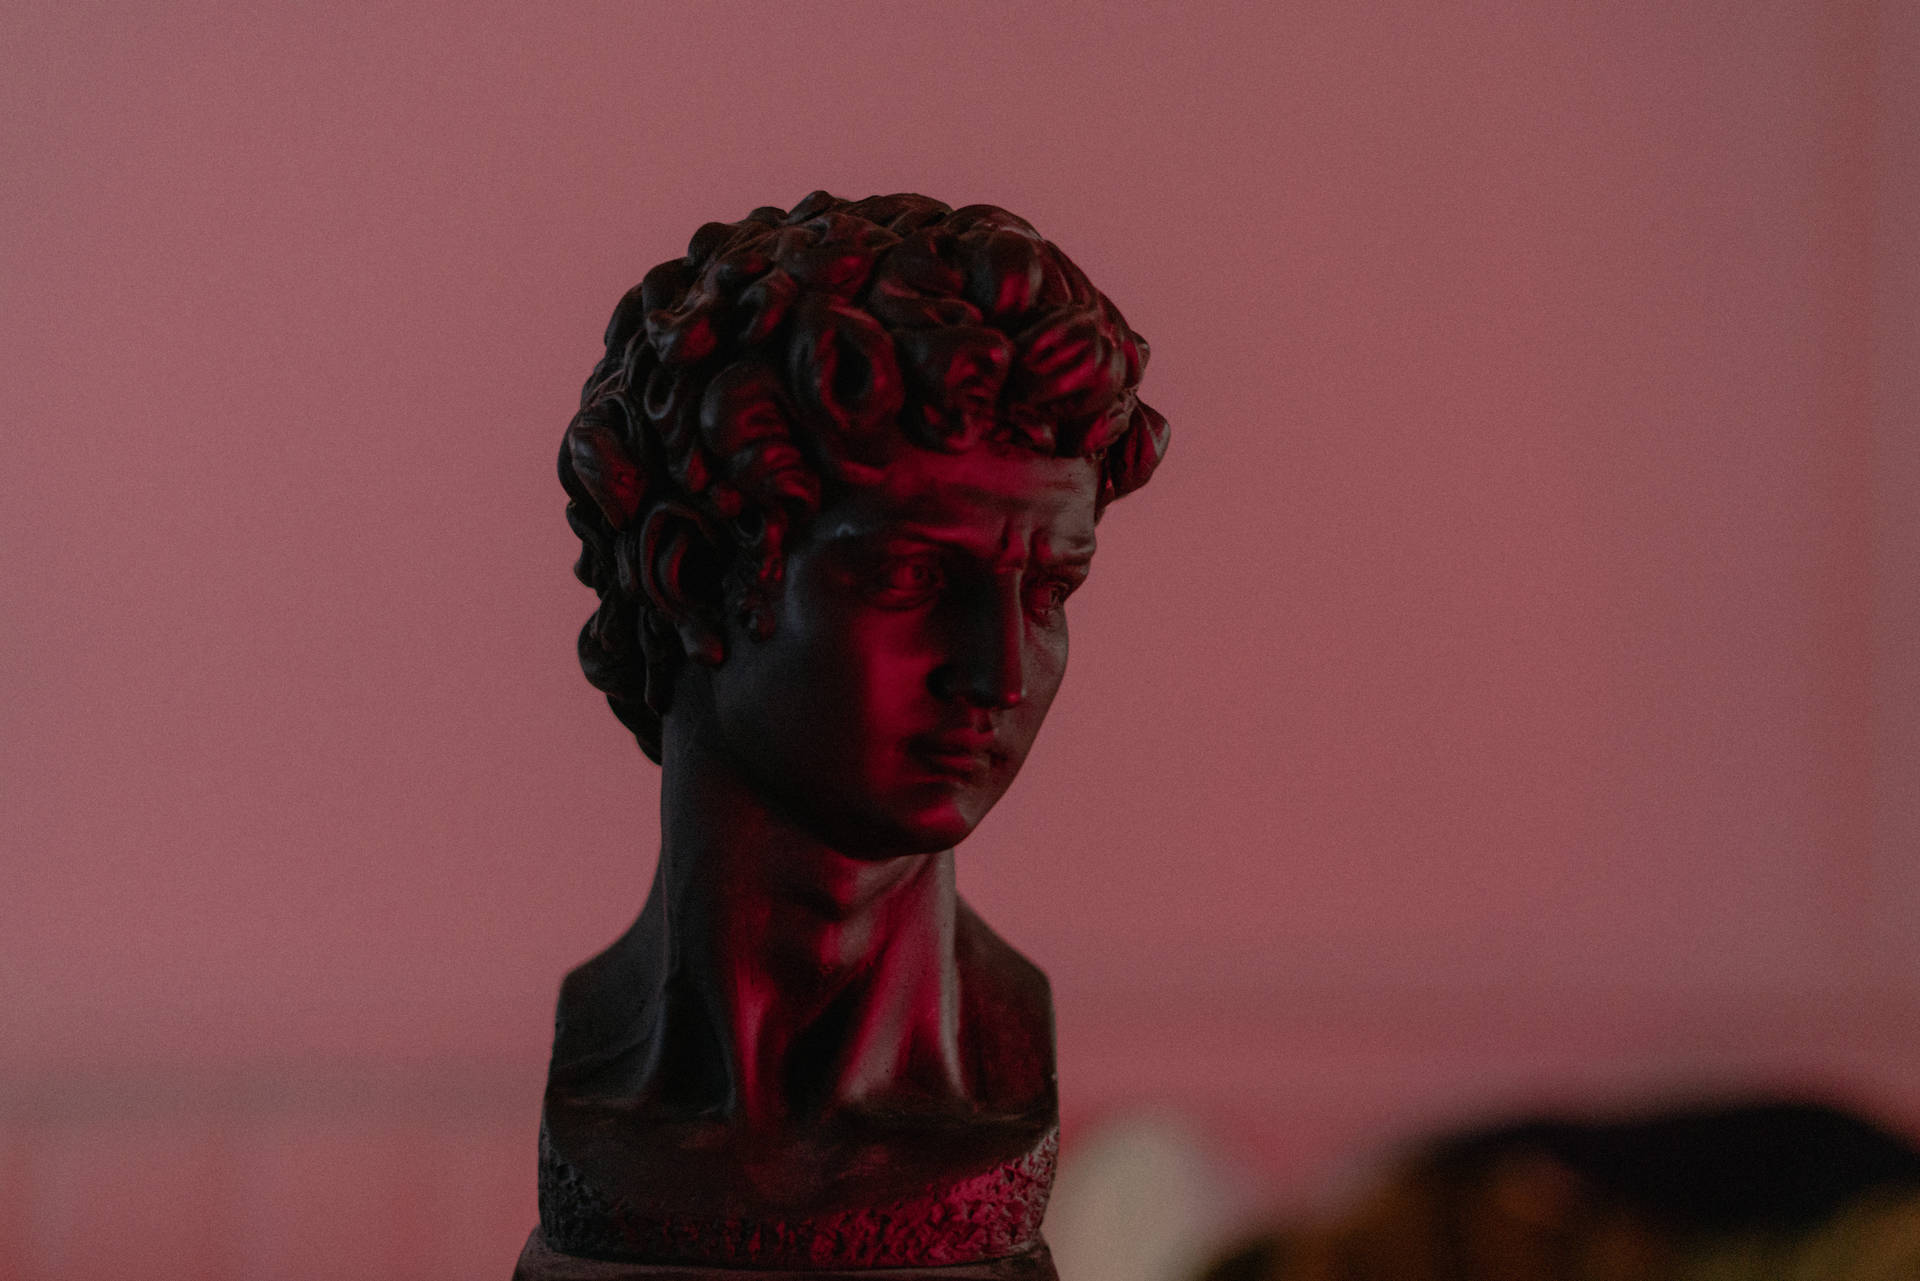 Dark Pink David Sculpture